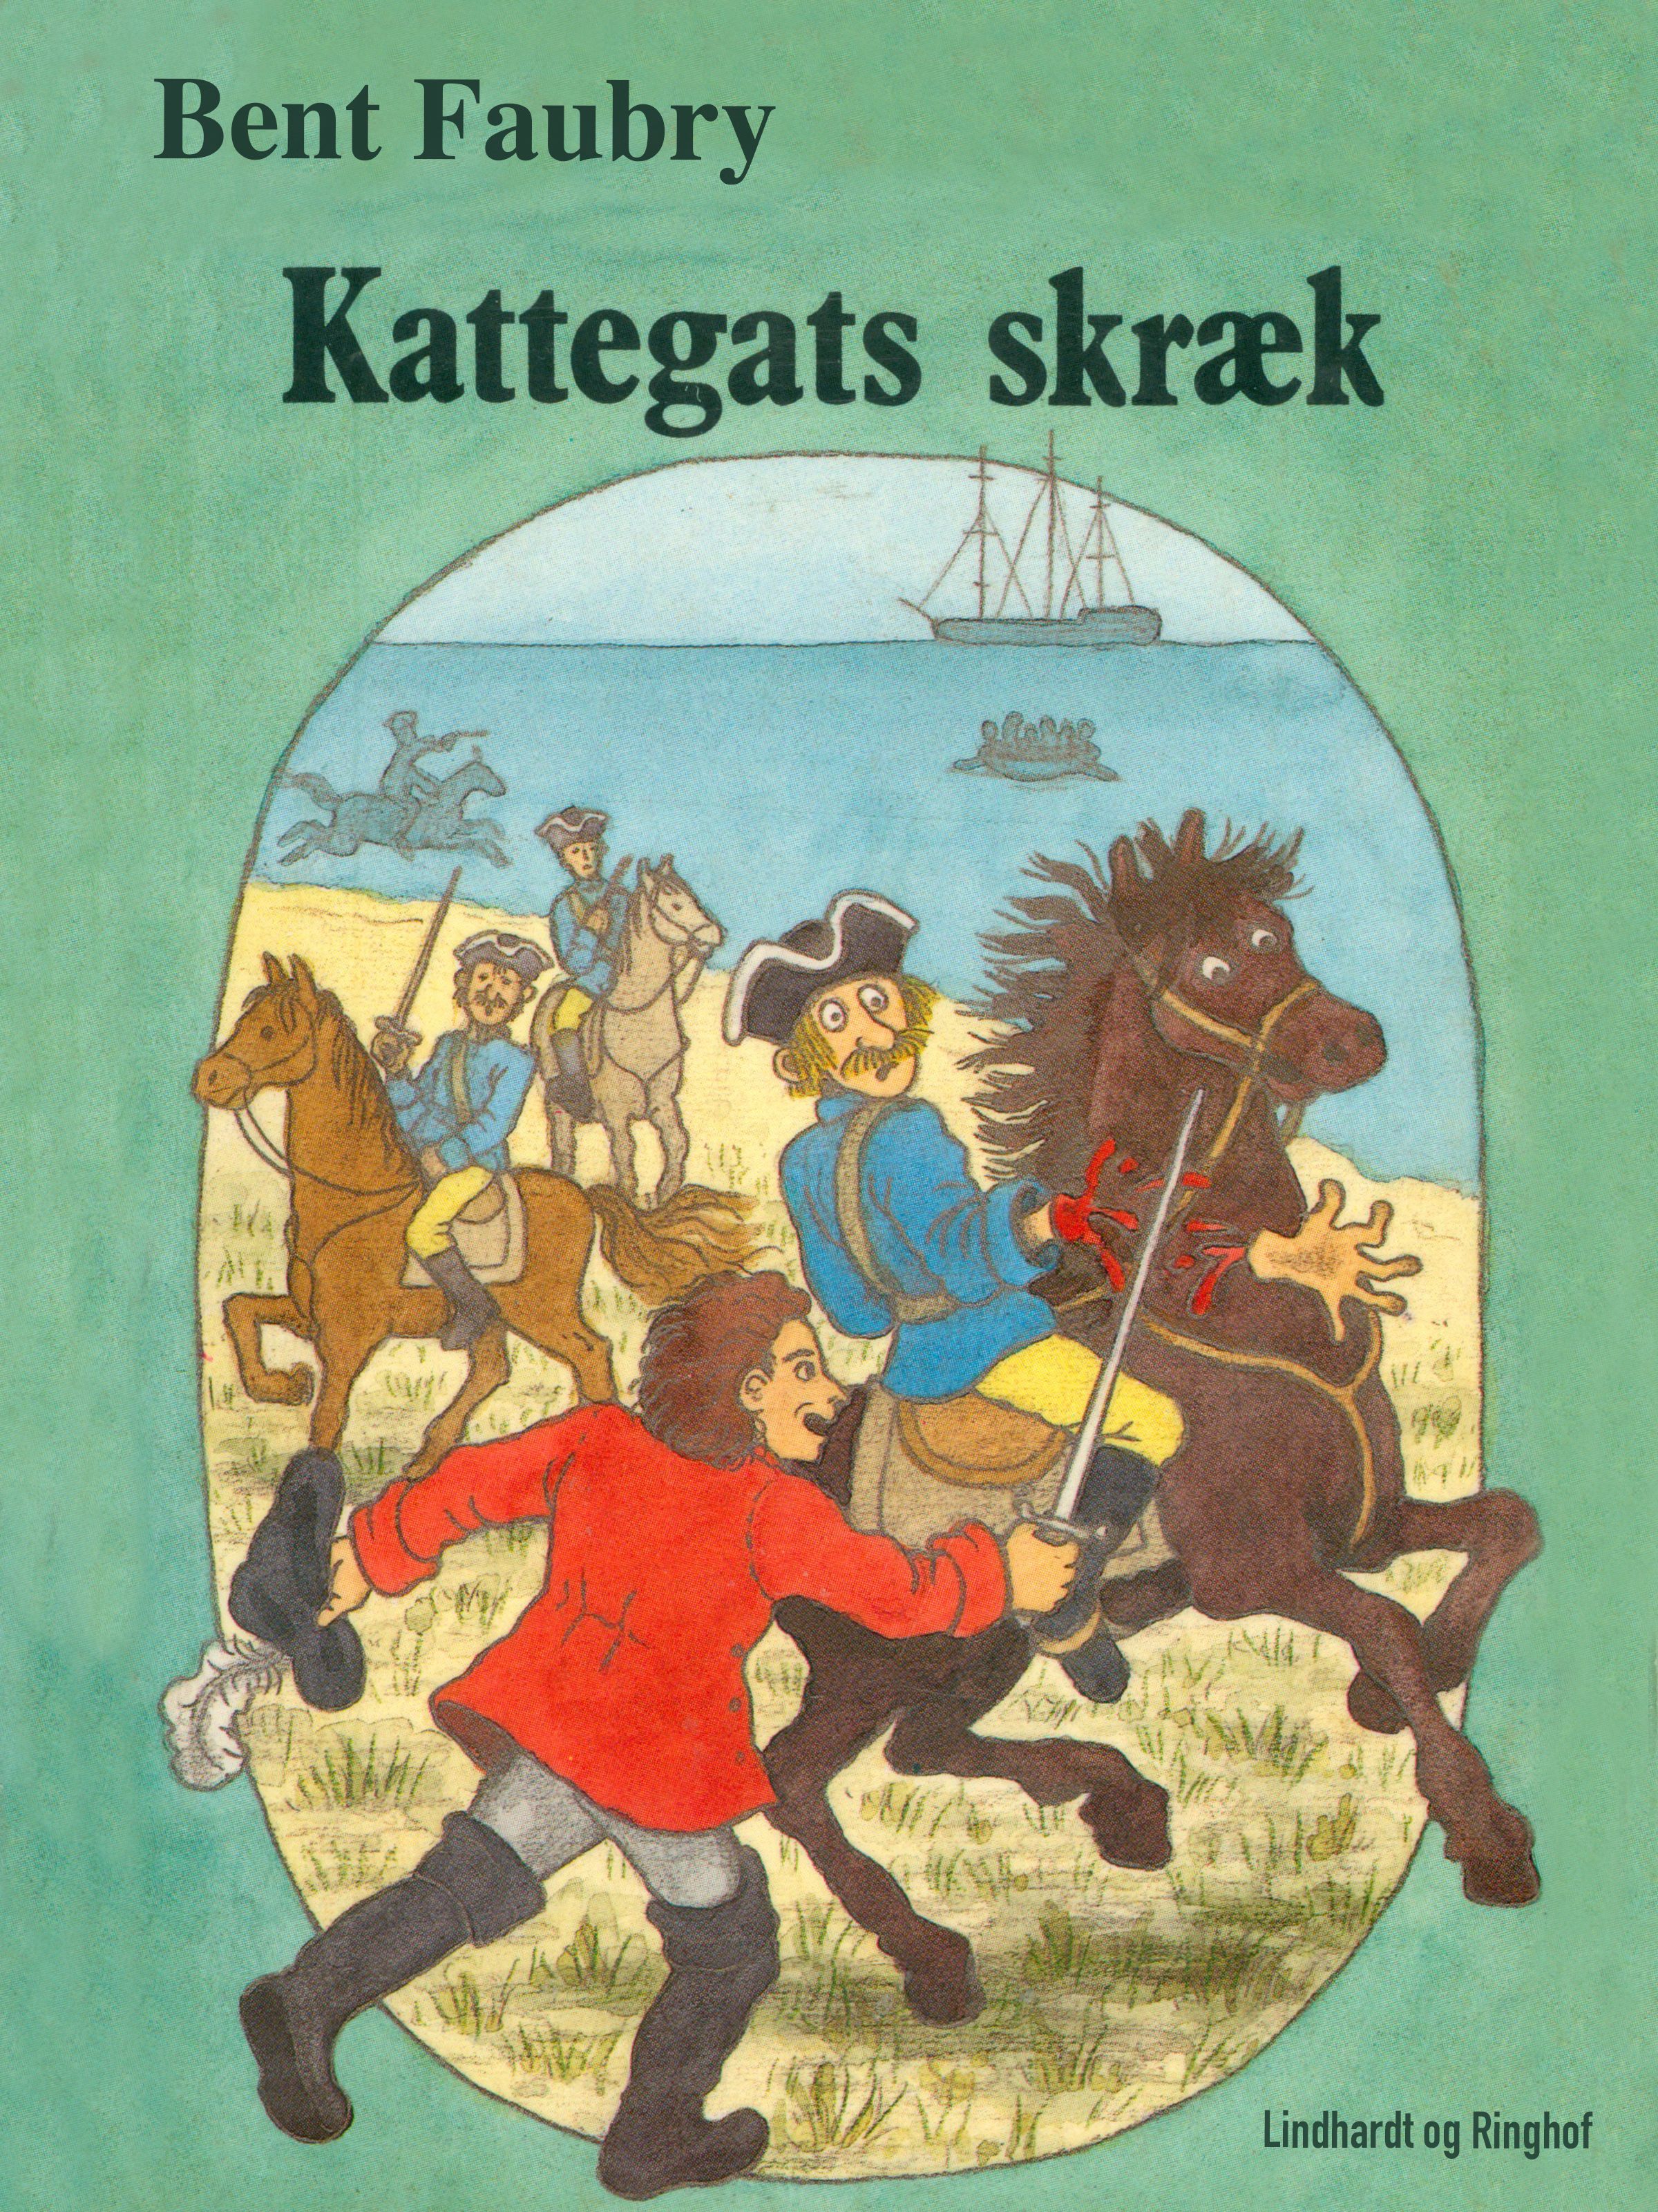 Kattegats skræk, e-bog af Bent Faurby